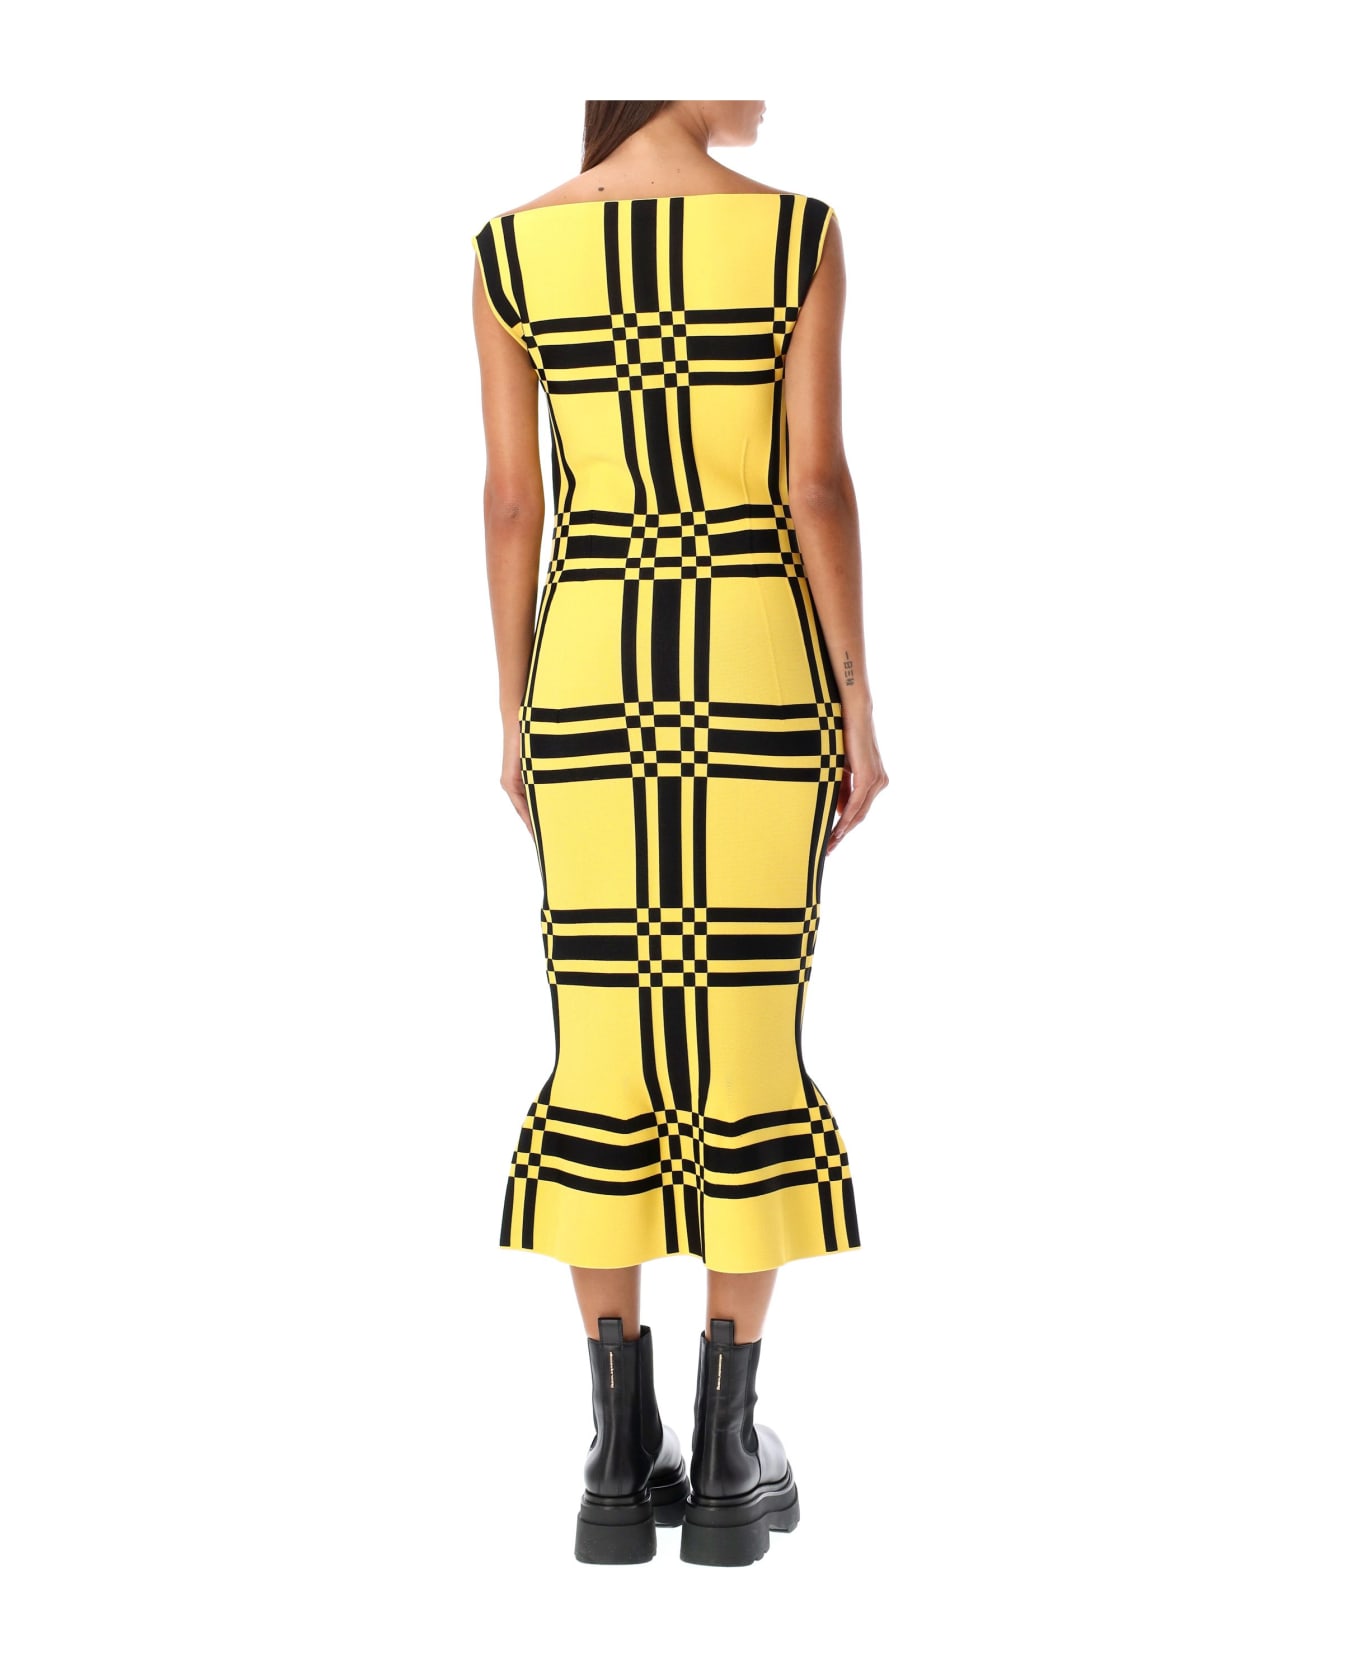 Marni Sleeveless Dress Check - YELLOW/BLACK